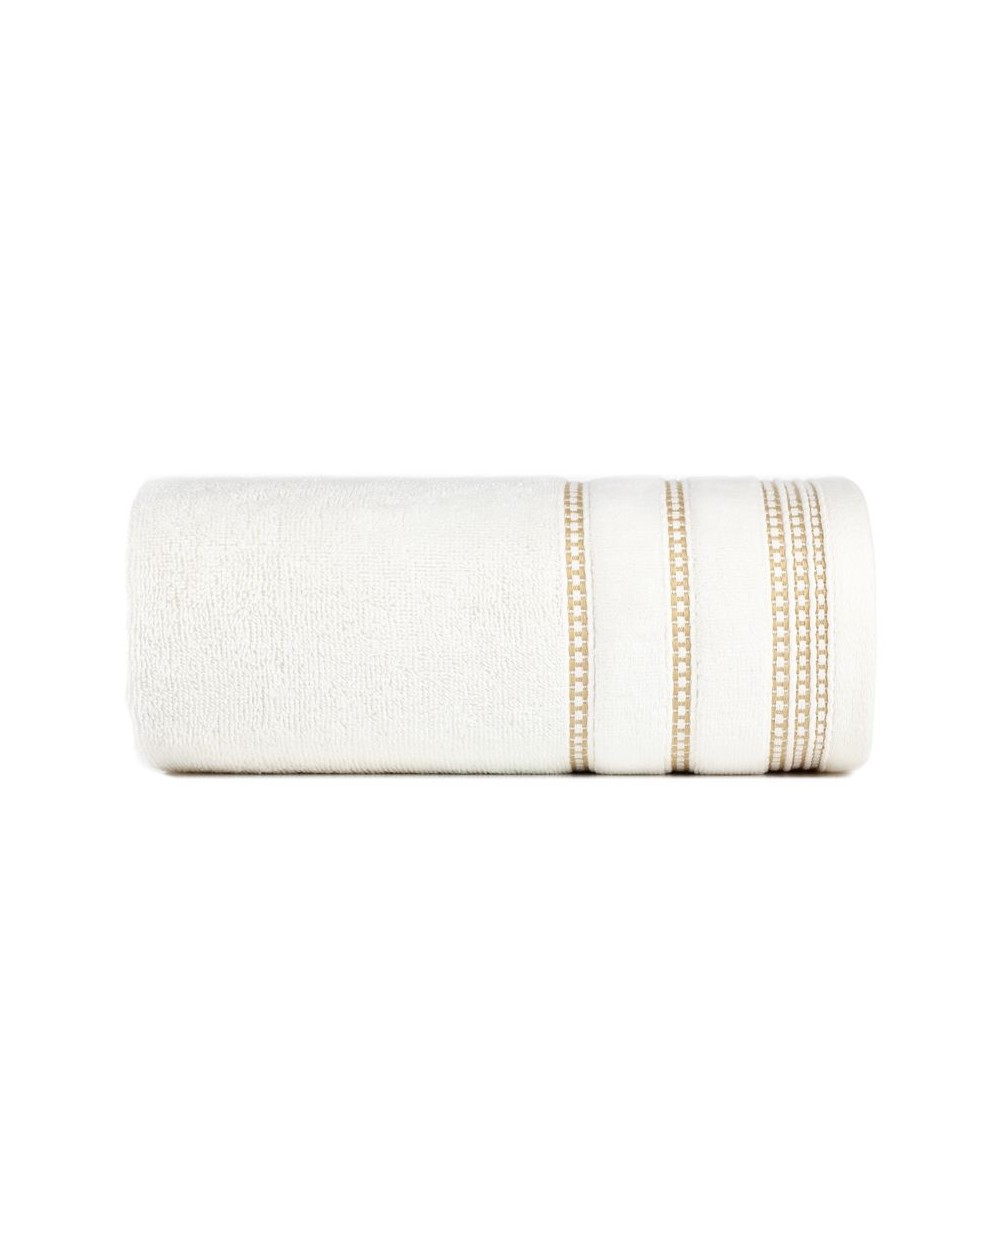 Ręcznik bawełna 50x90 Amanda kremowy